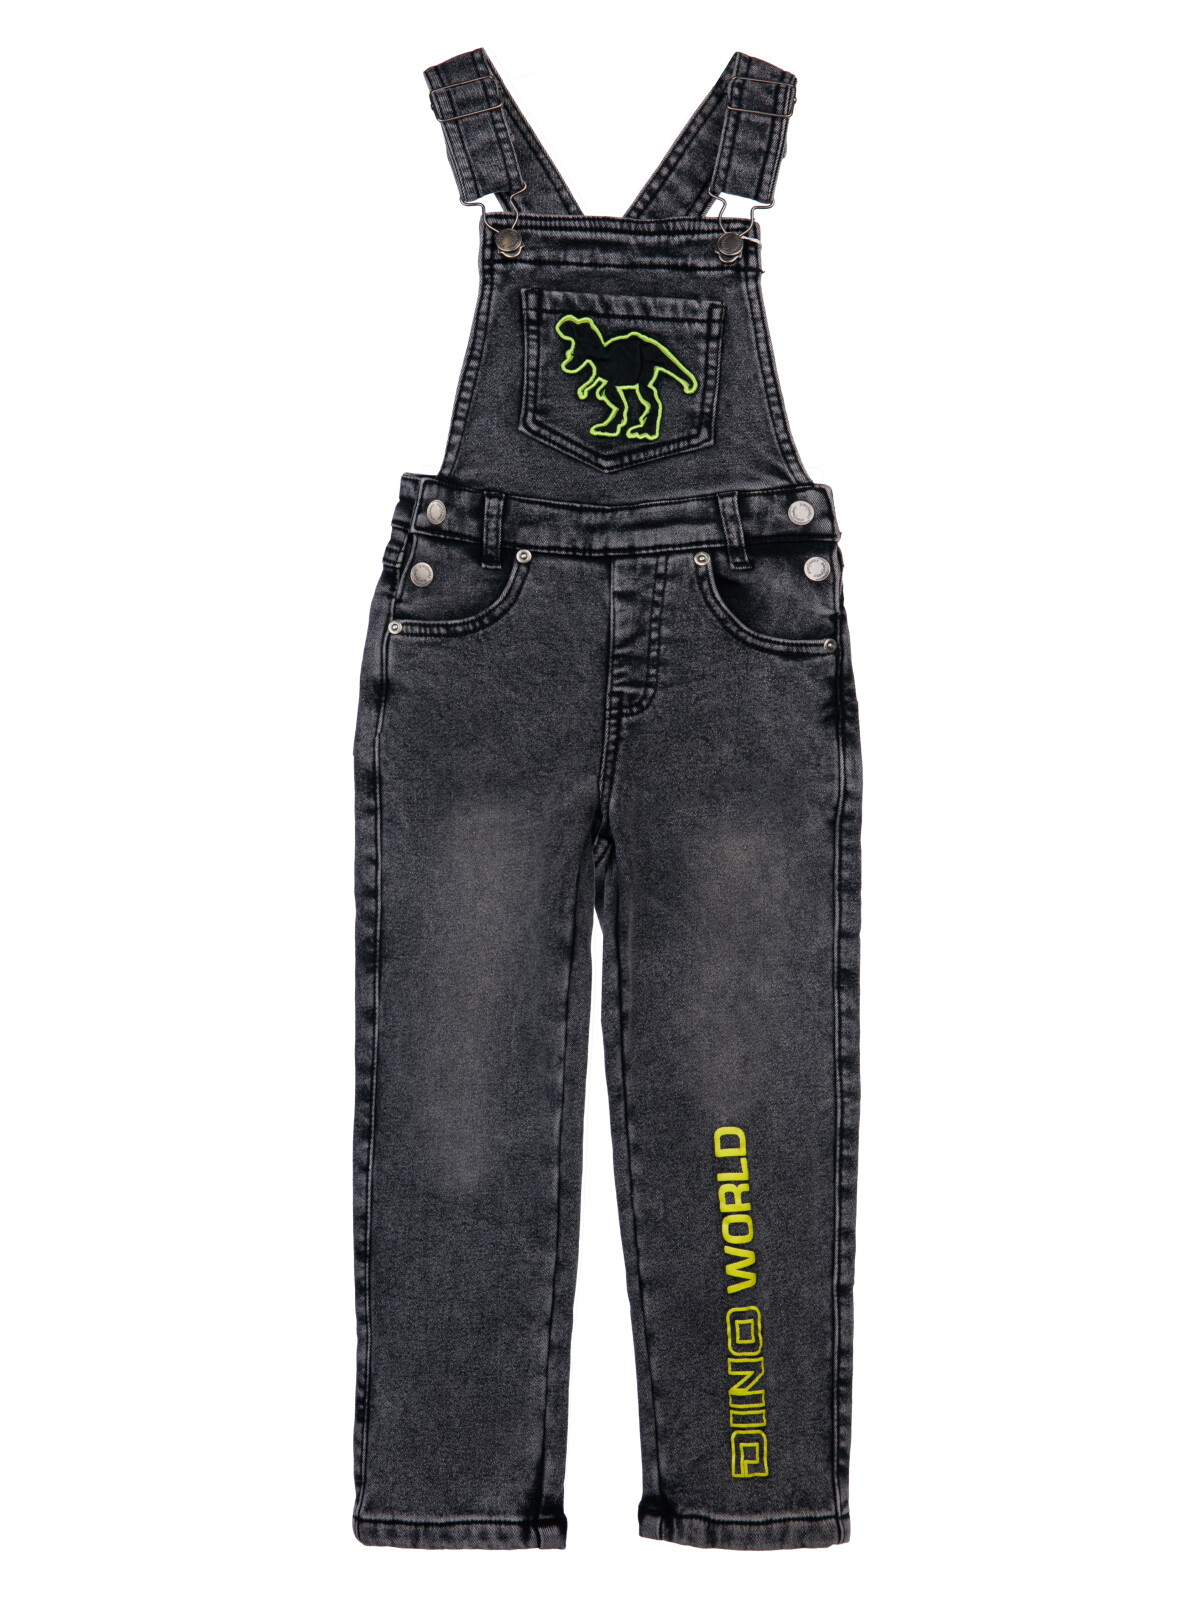 Полукомбинезон джинсовый утепленный флисом для мальчиков PlayToday, черный, 116 полукомбинезон текстильный джинсовый утепленный флисом для мальчиков